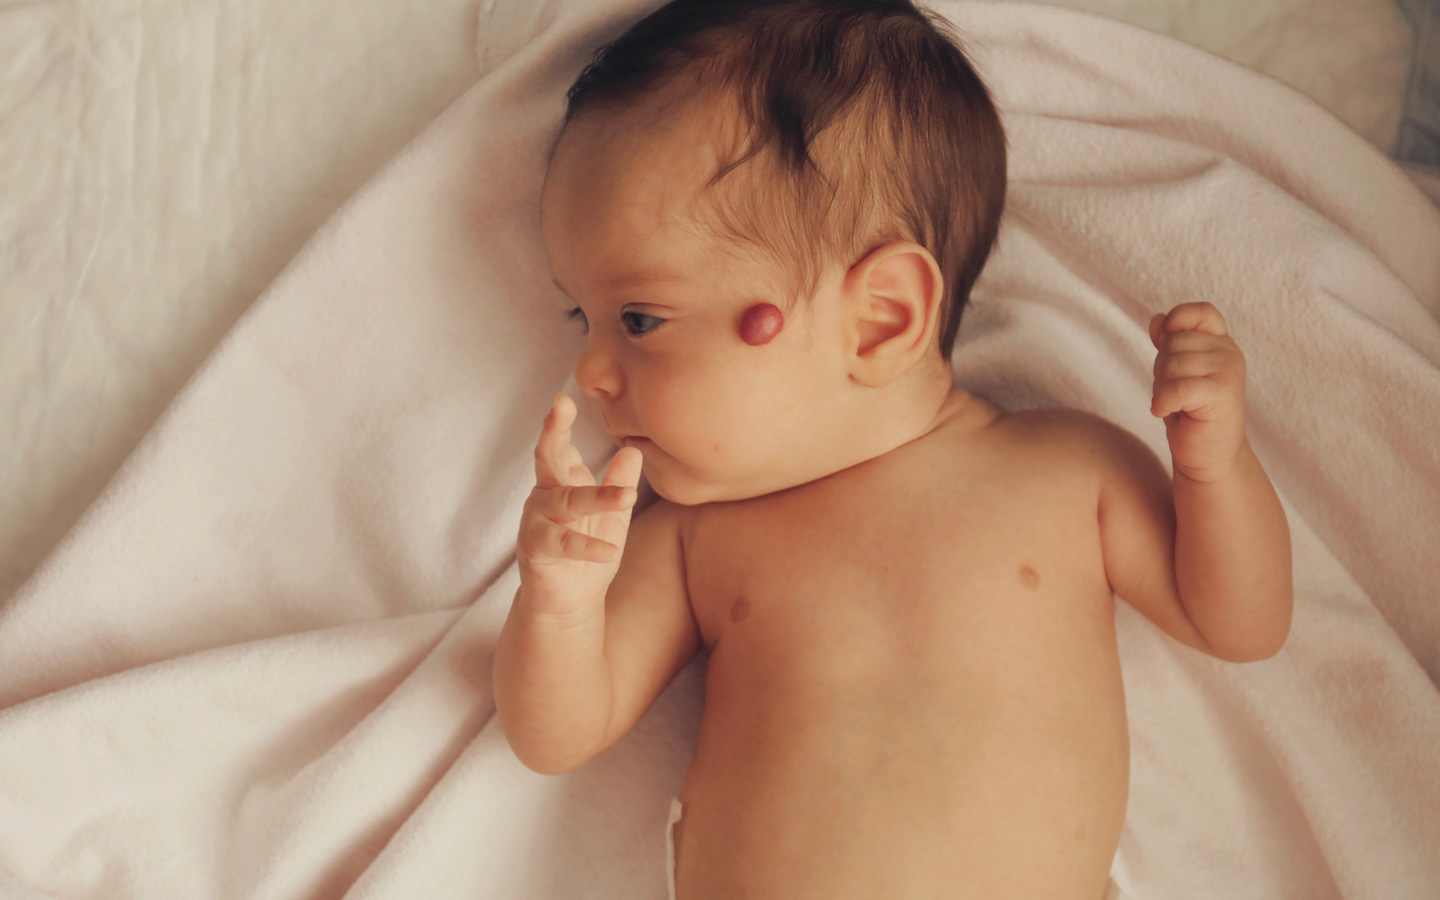 Foto: Säugling mit einem kleinen Blutschwämmchen auf der Wange.